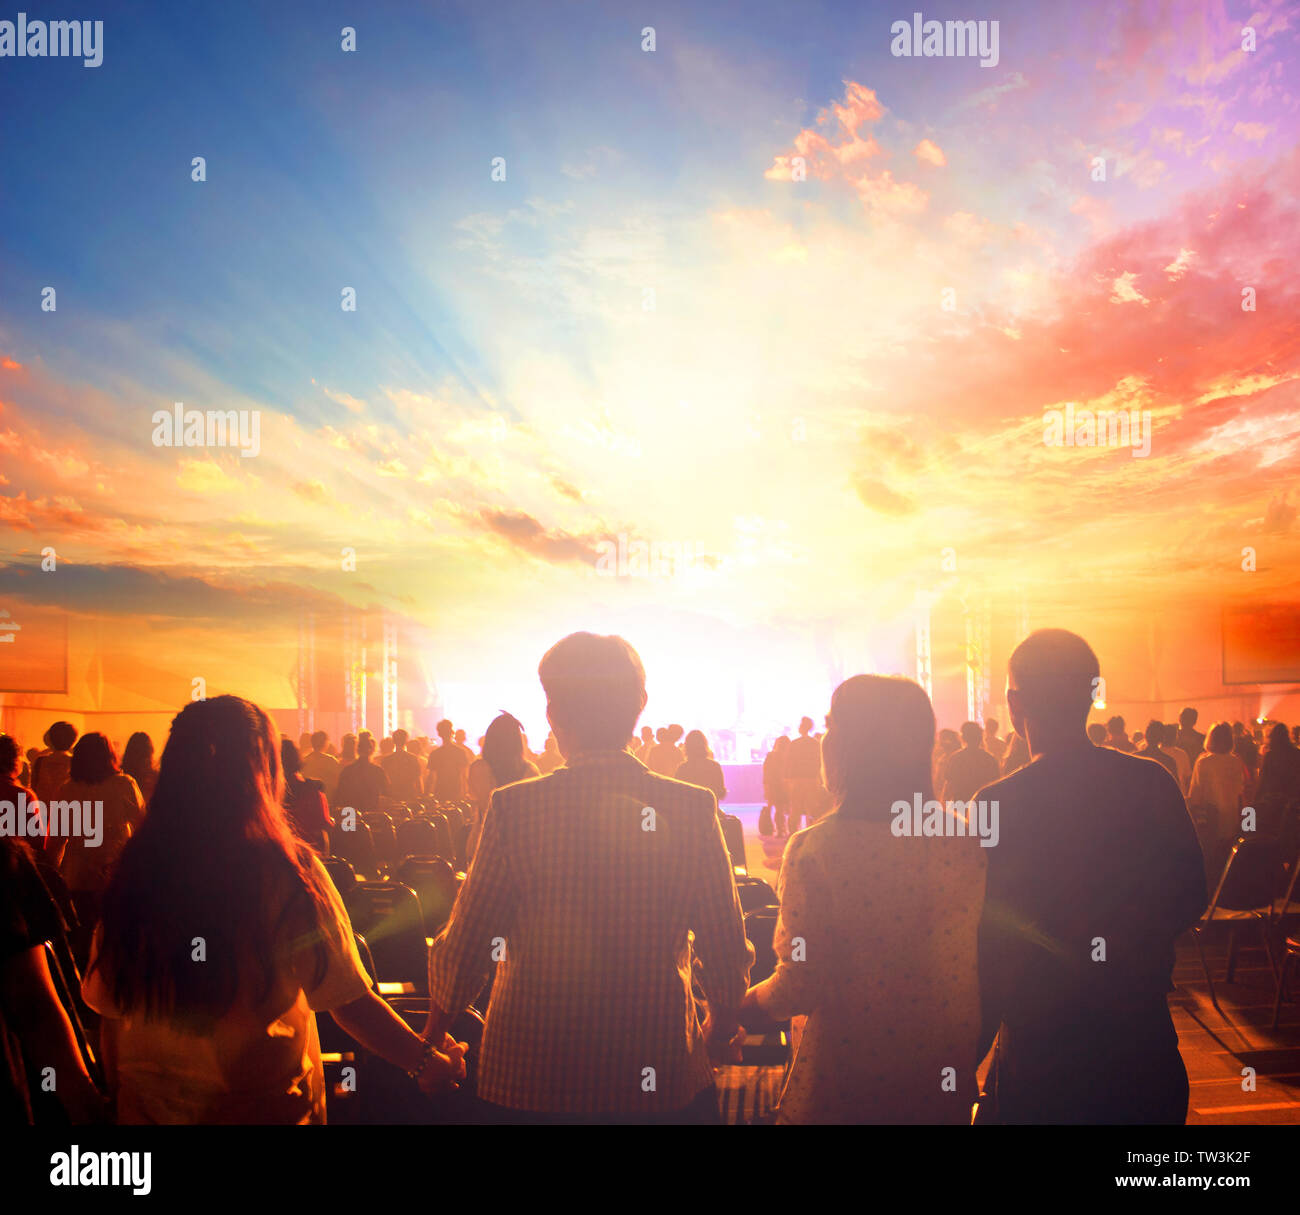 Internationaler Tag des Friedens: Silhouette des Menschen Hände bei Sonnenuntergang Hintergrund angehoben Stockfoto